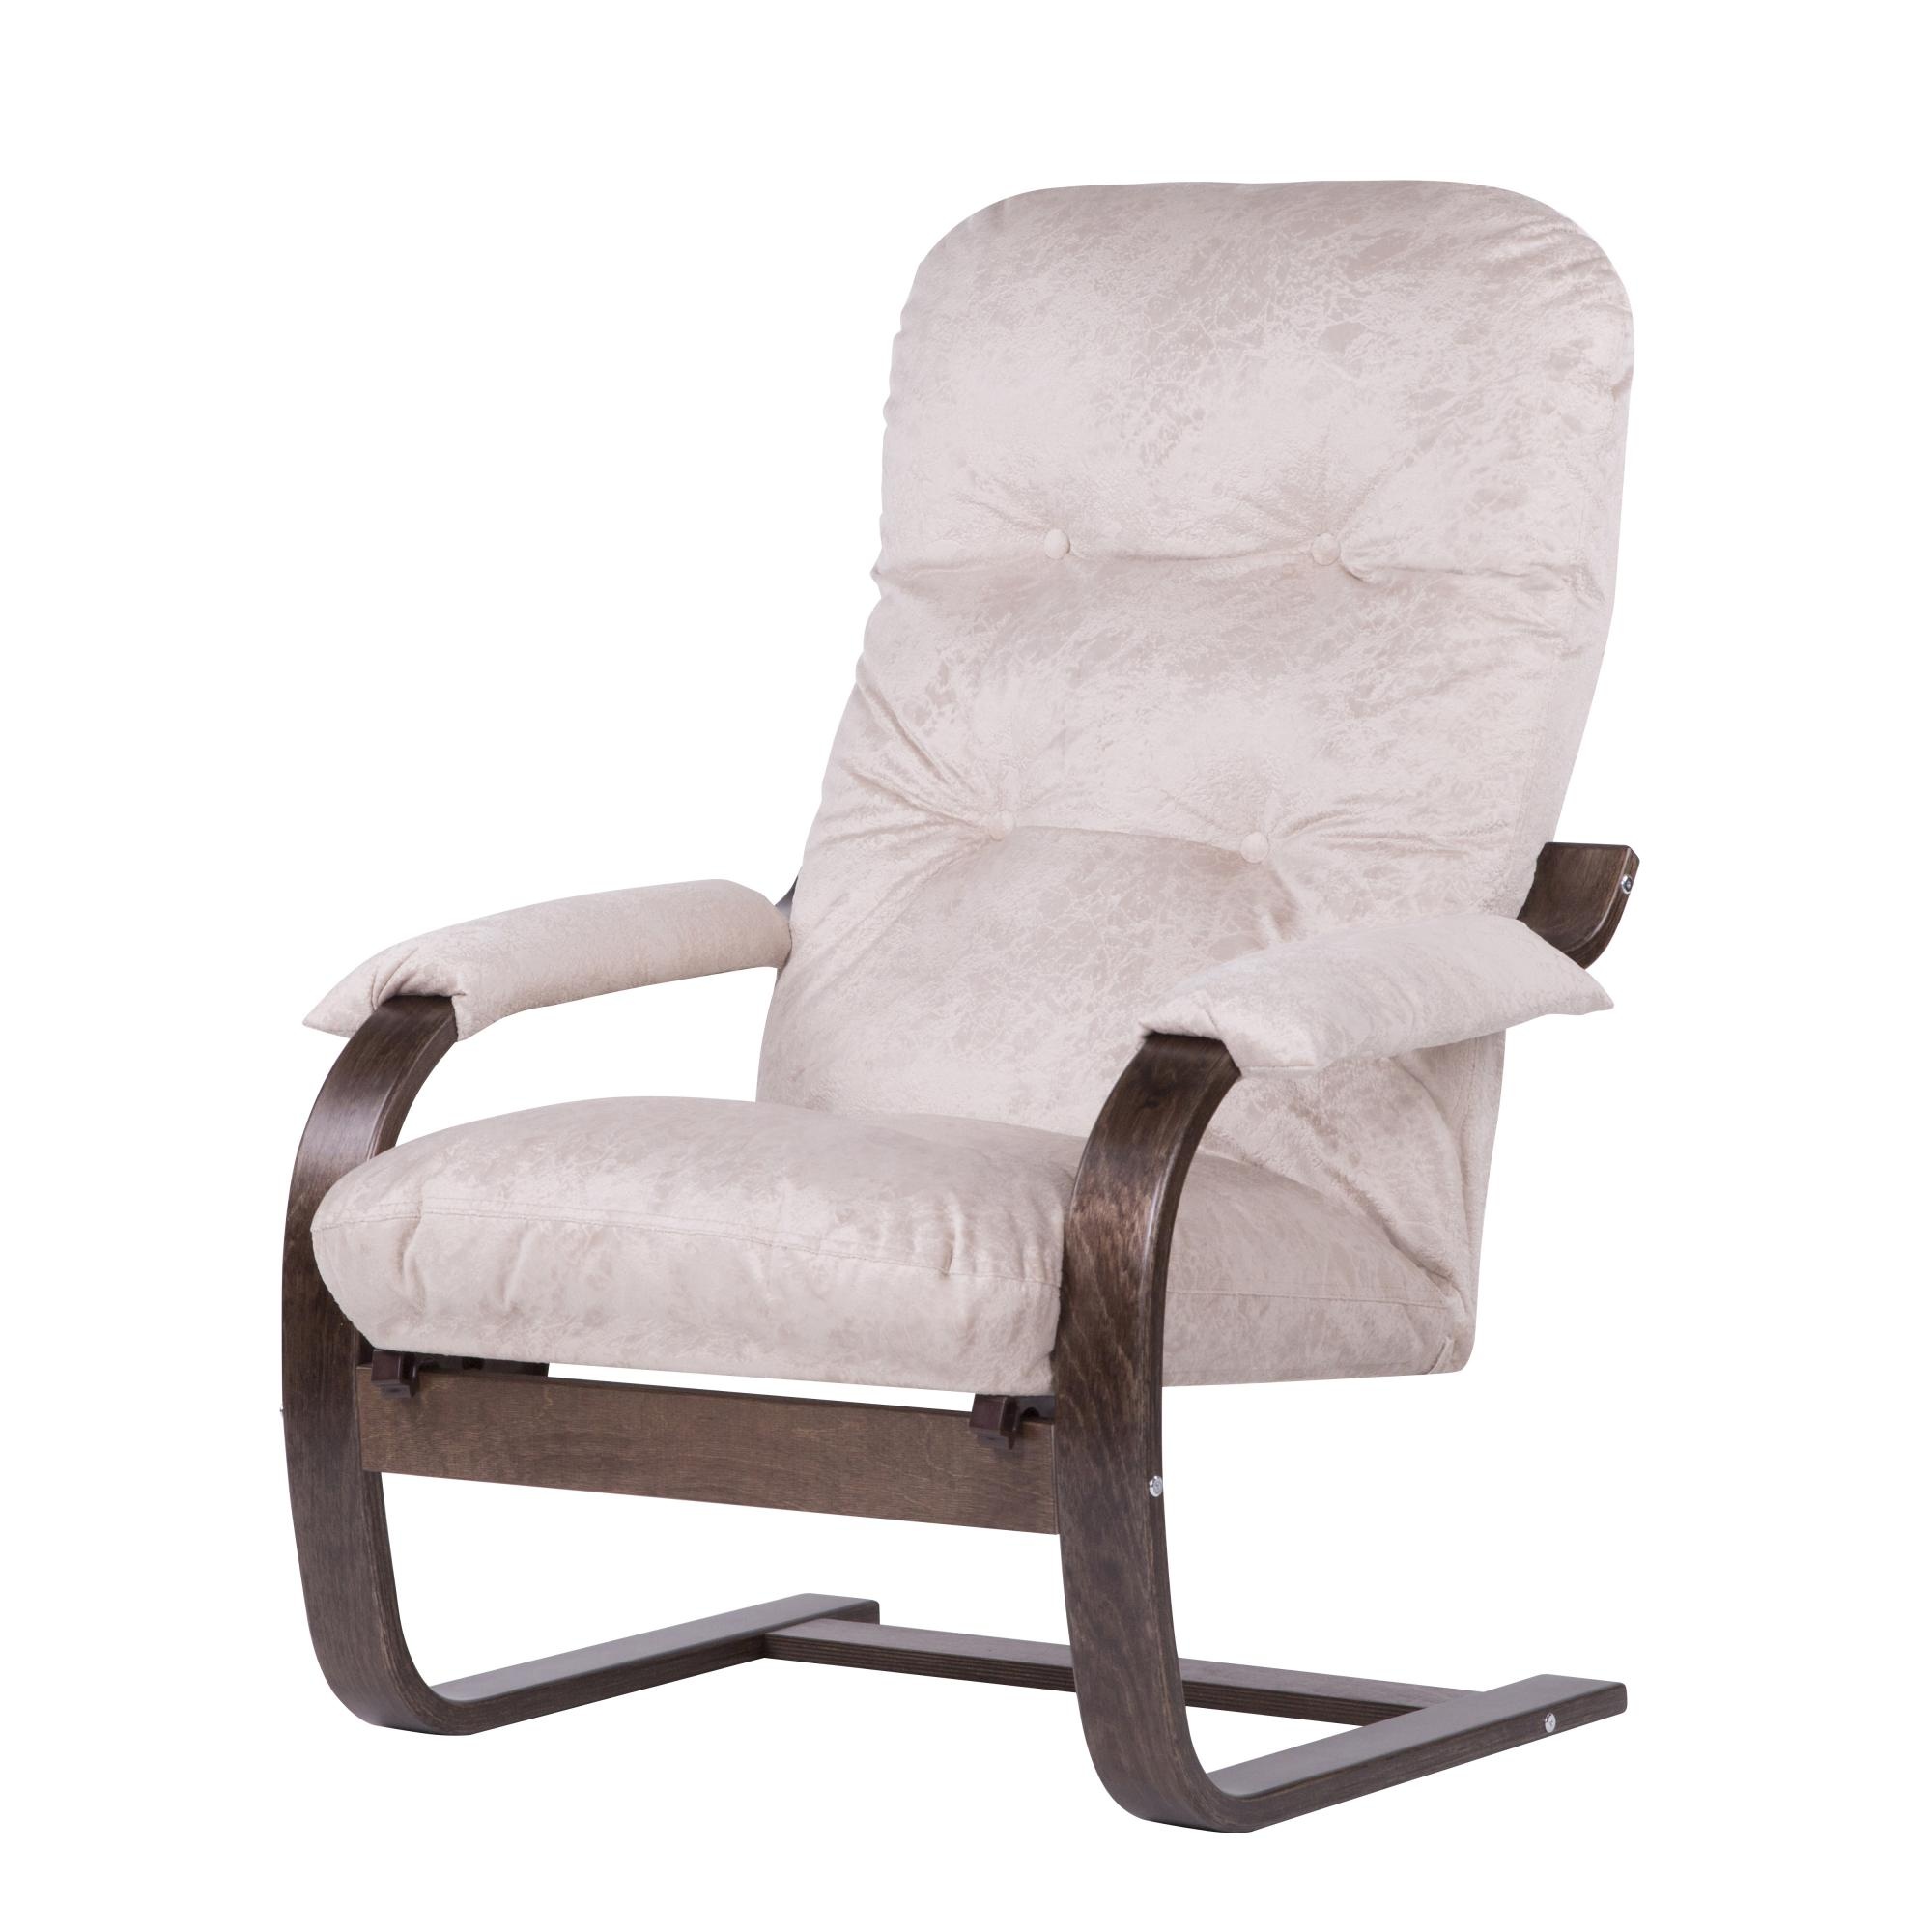 Кресло мебельторг онега-2 каркас венге сиденье карамель preview 1